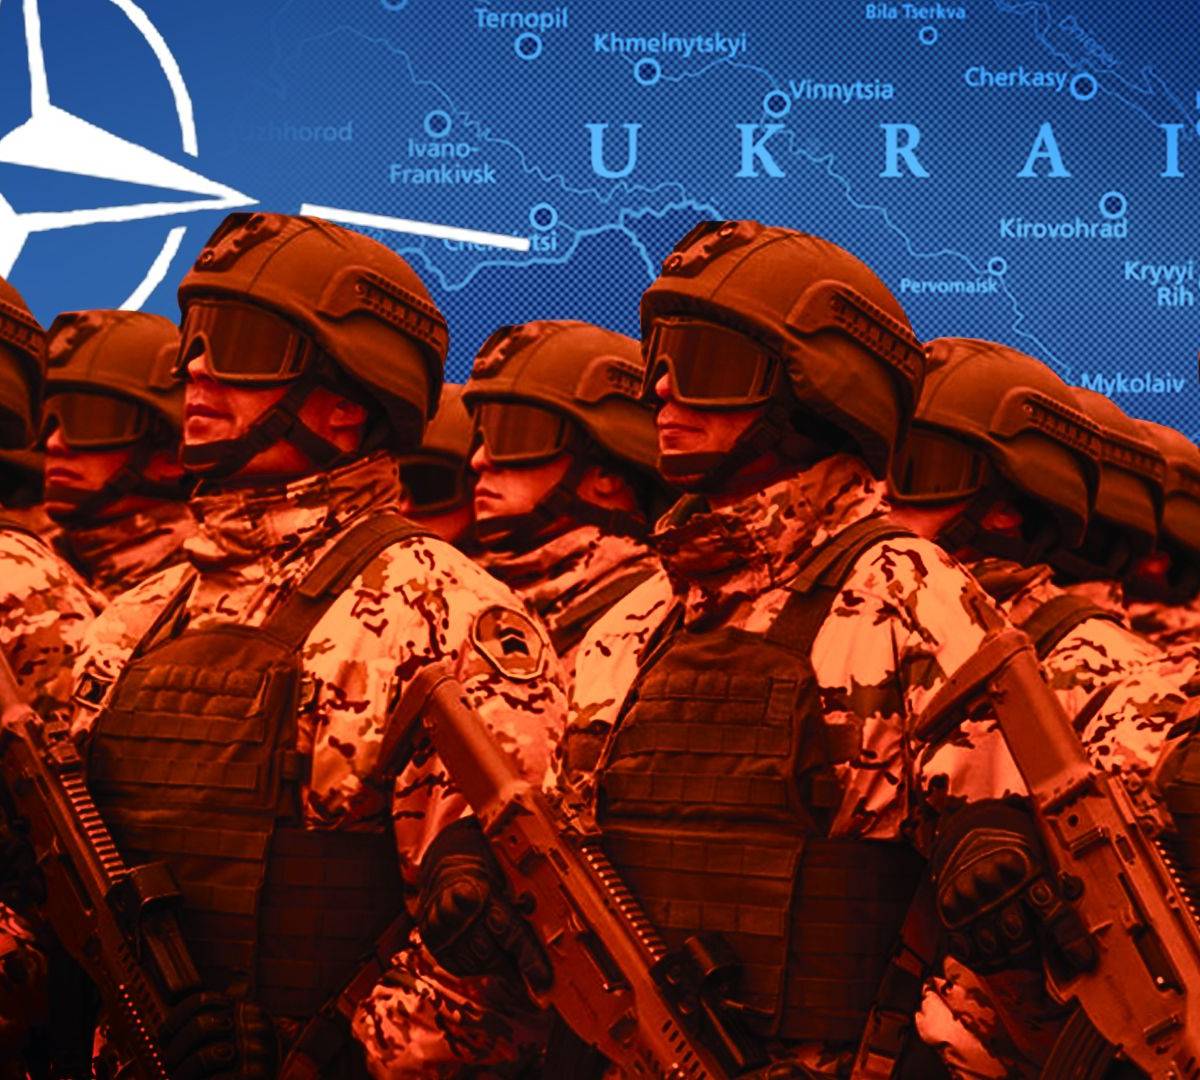 The London Free Press: НАТО должно помочь Украине захватить Крым